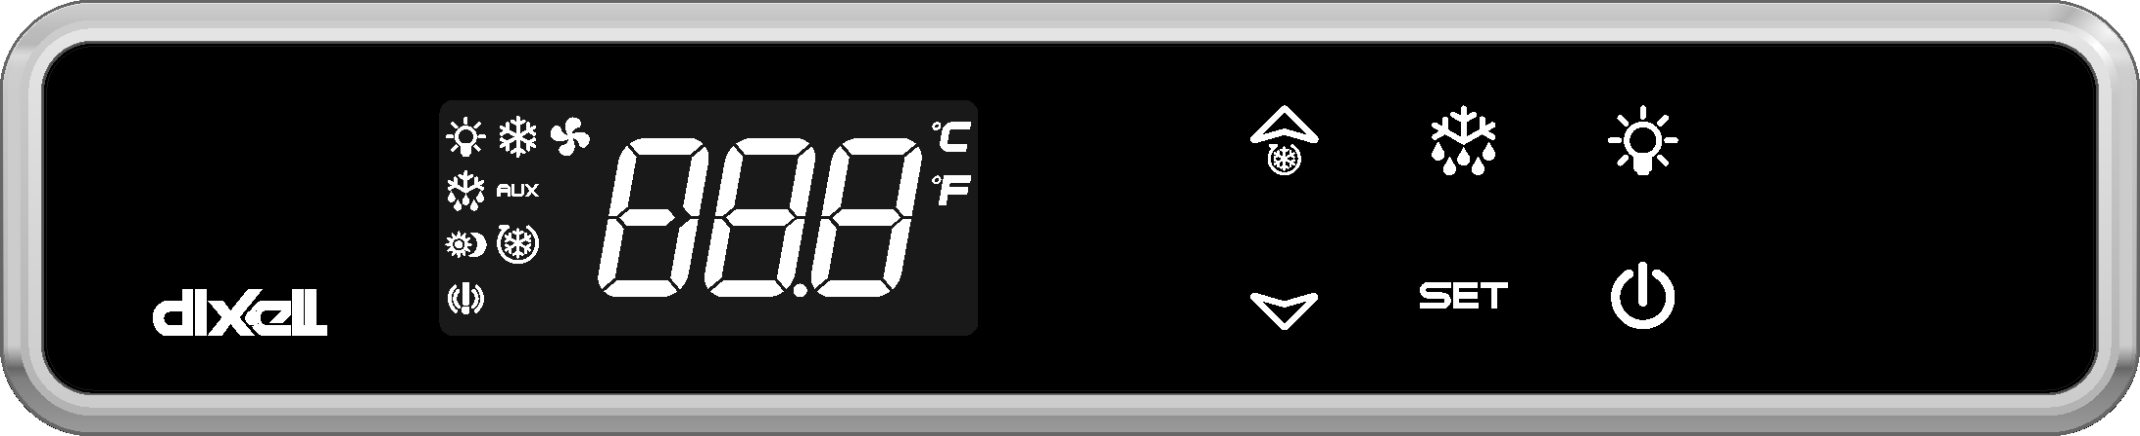 Controlador digital para aplicaciones de refrigeración en media y baja temperatura XW60LT XW60LRT 1. ADVERTENCIAS GENERALES 1.